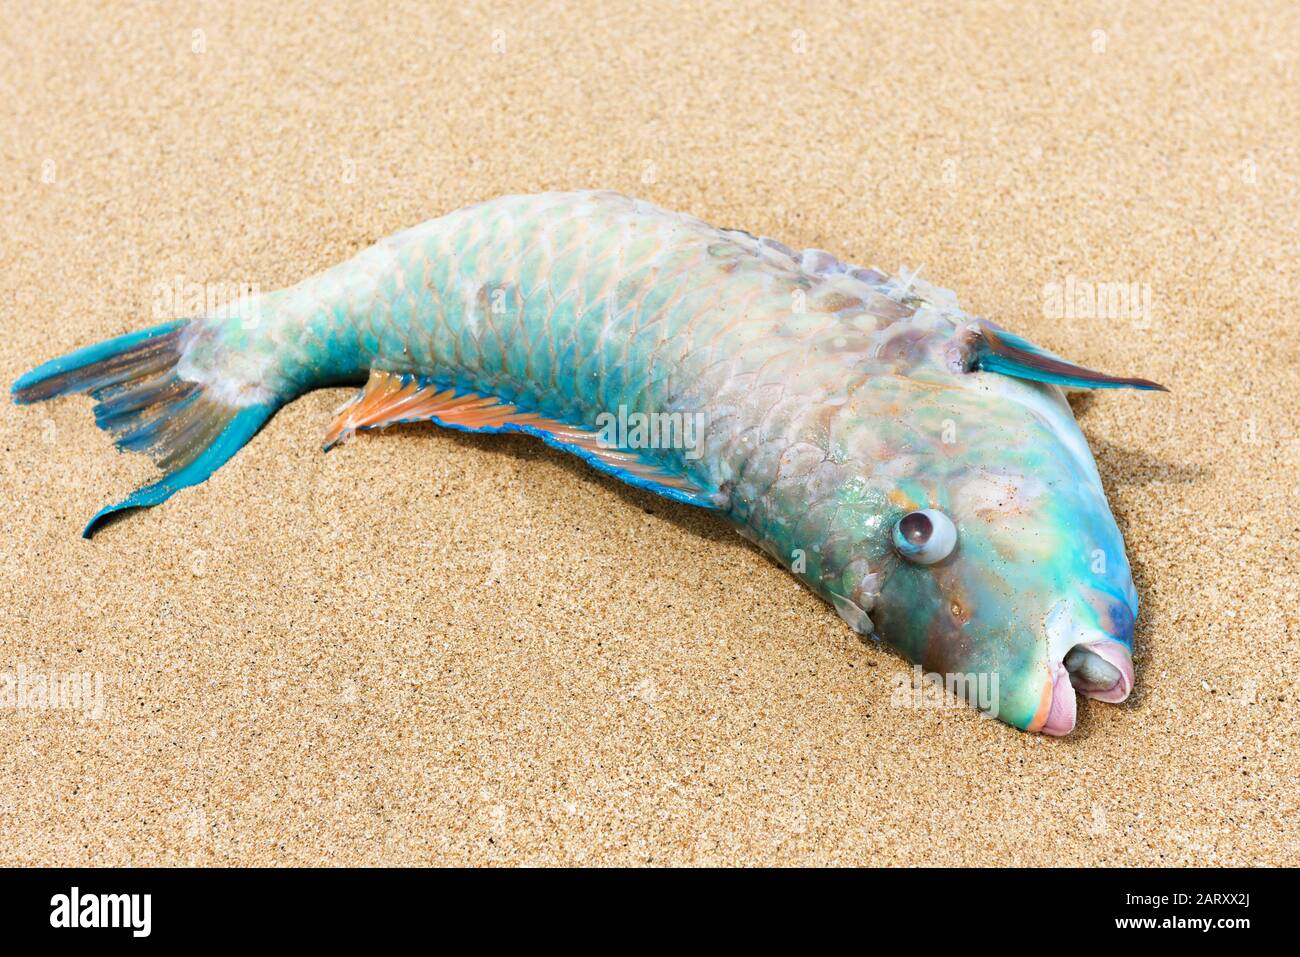 Fisch an einem sandigen Strand. Tote bunte Fische an einem tropischen Ufer. Schöne Nahaufnahme von Meerestieren. Konzept der Fischerei oder Meeresverschmutzung. Stockfoto